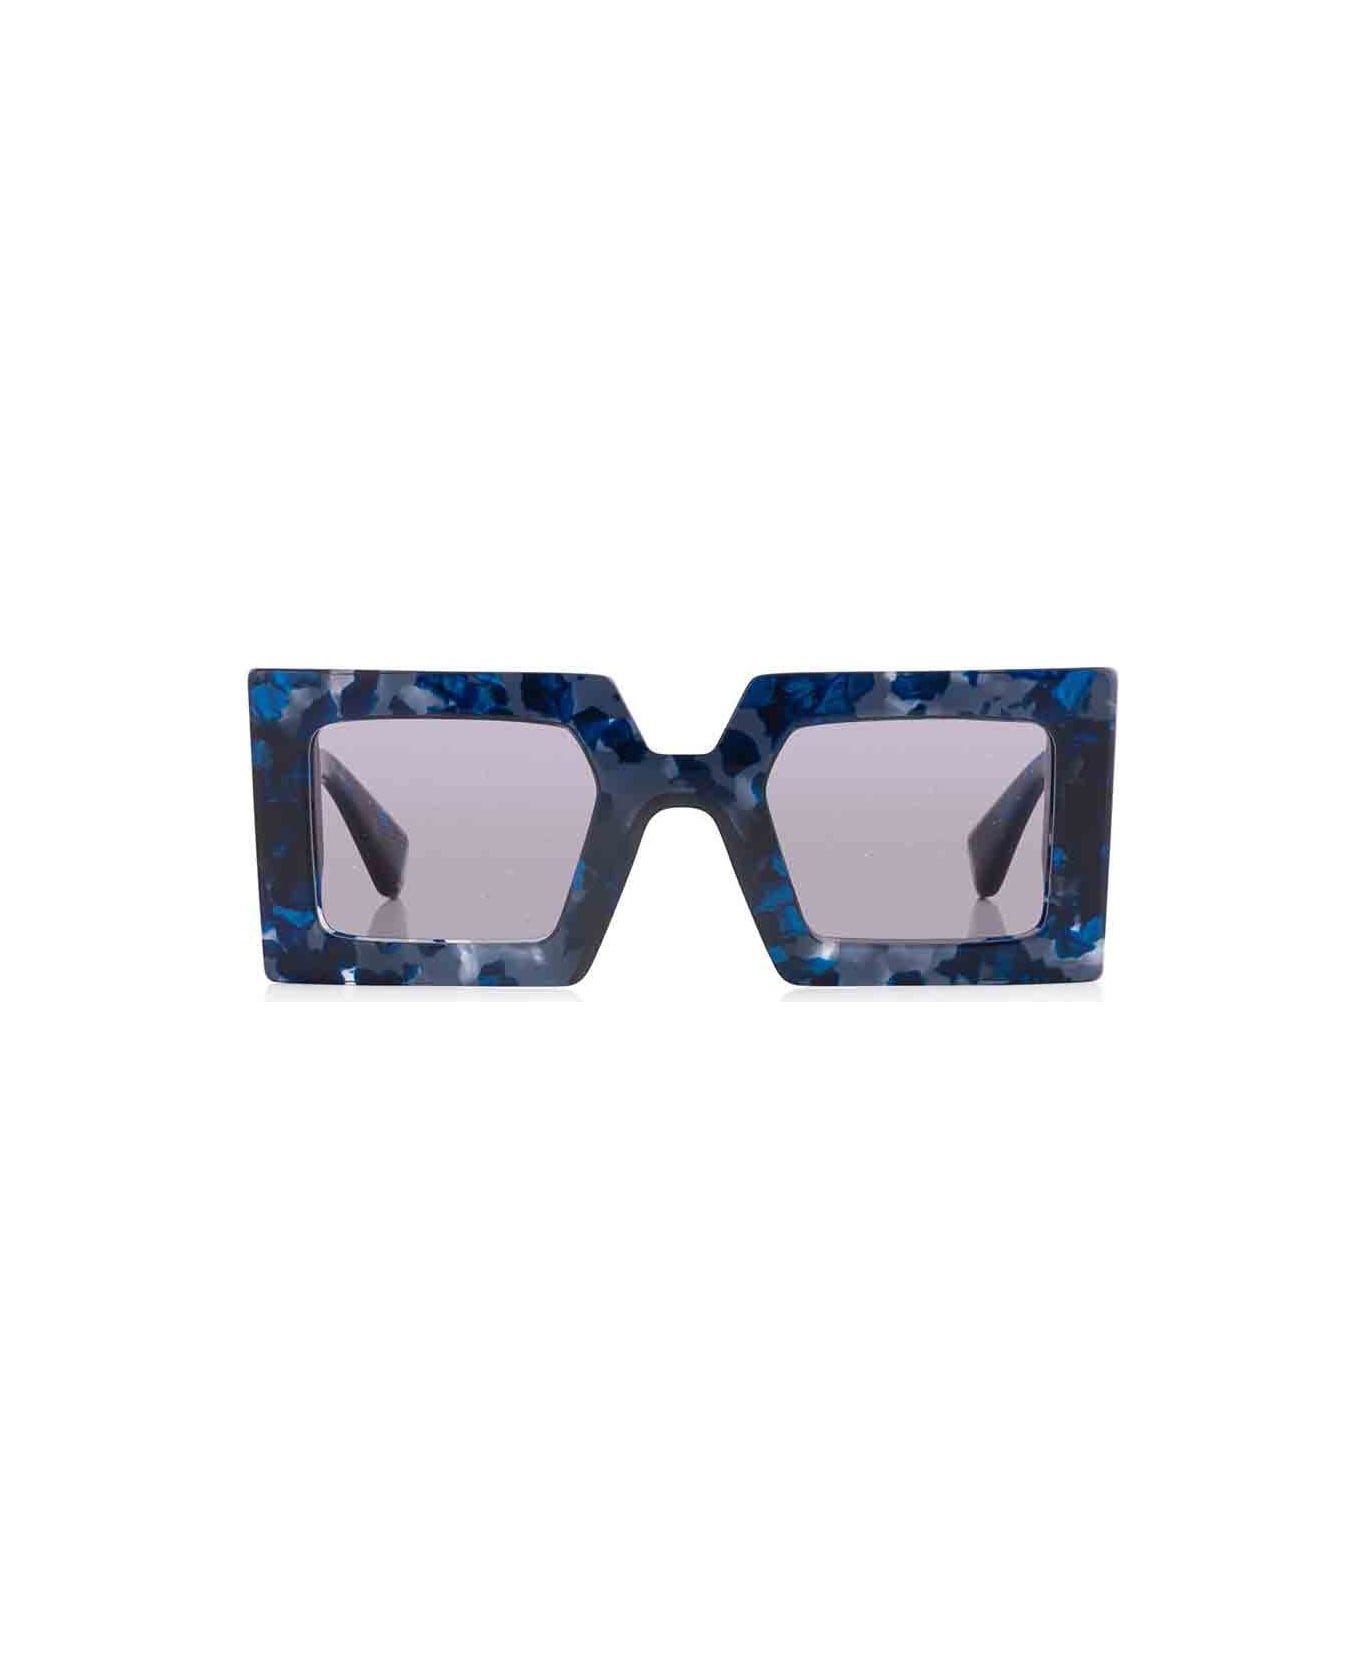 Robert La Roche Eyewear - Blu/Blu